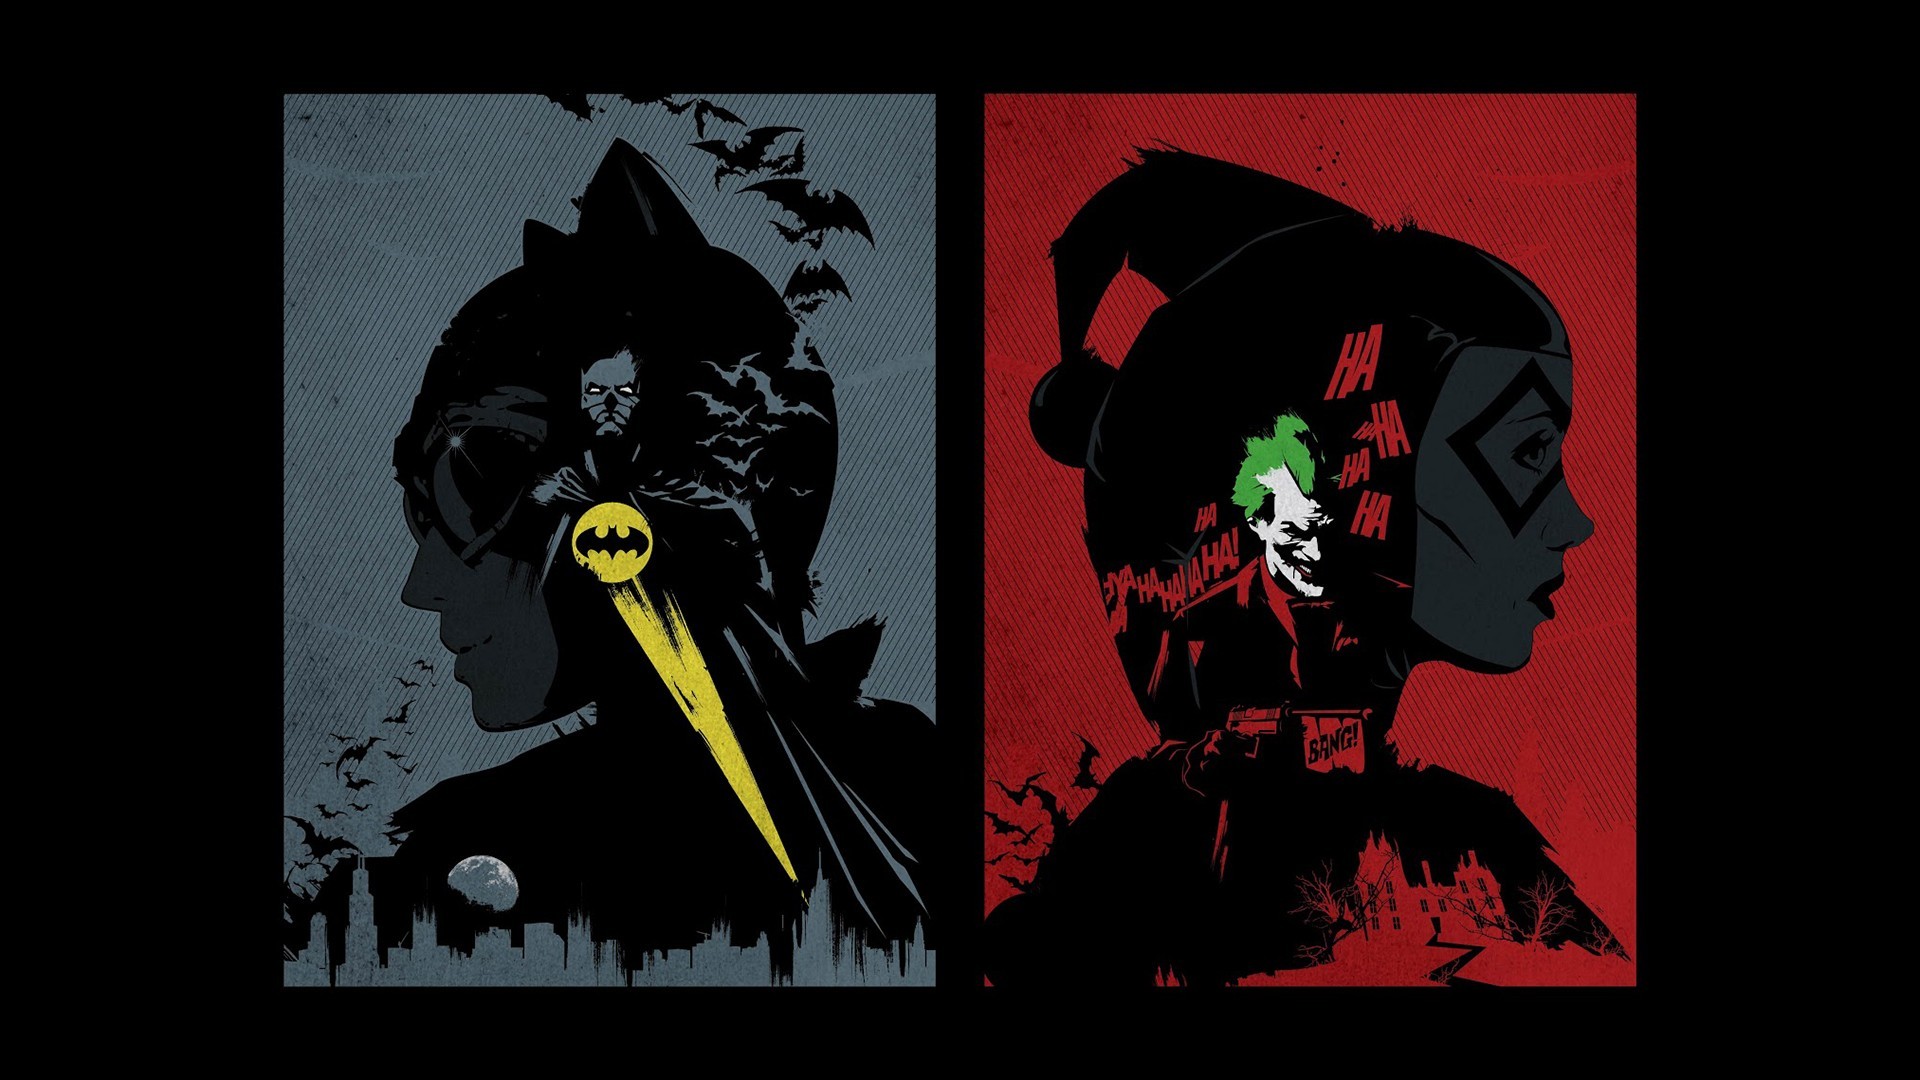 1920x1080 Batman DC Comics comics The Joker Harley Quinn Catwoman fan art wallpaper |   | 205167 | WallpaperUP